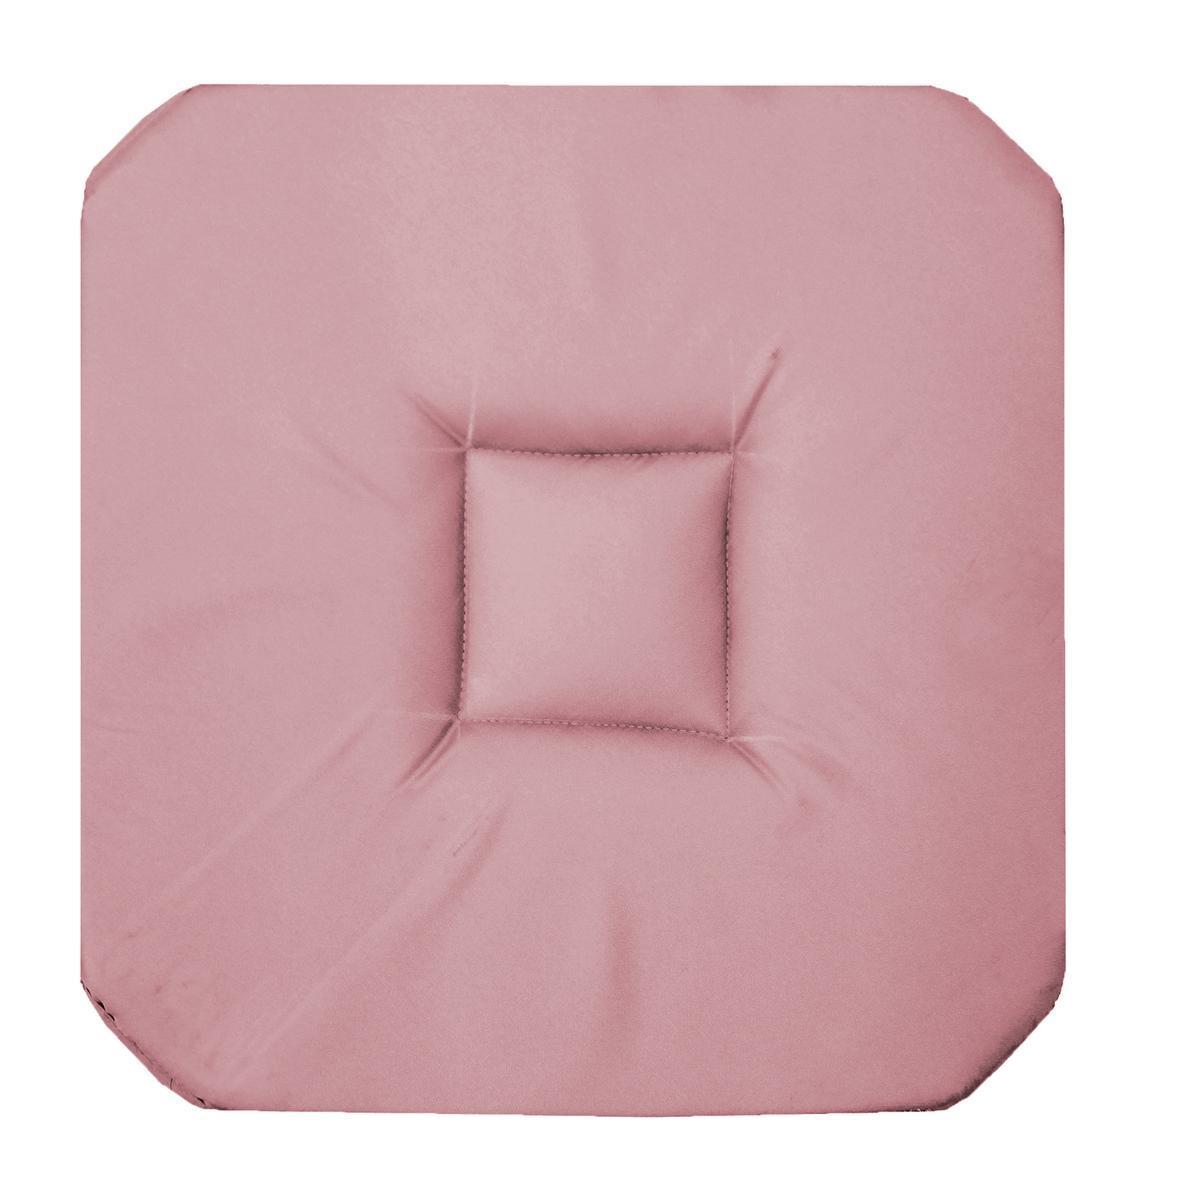 Galette de chaise Panama - 36 x 36 cm - Rose dragée